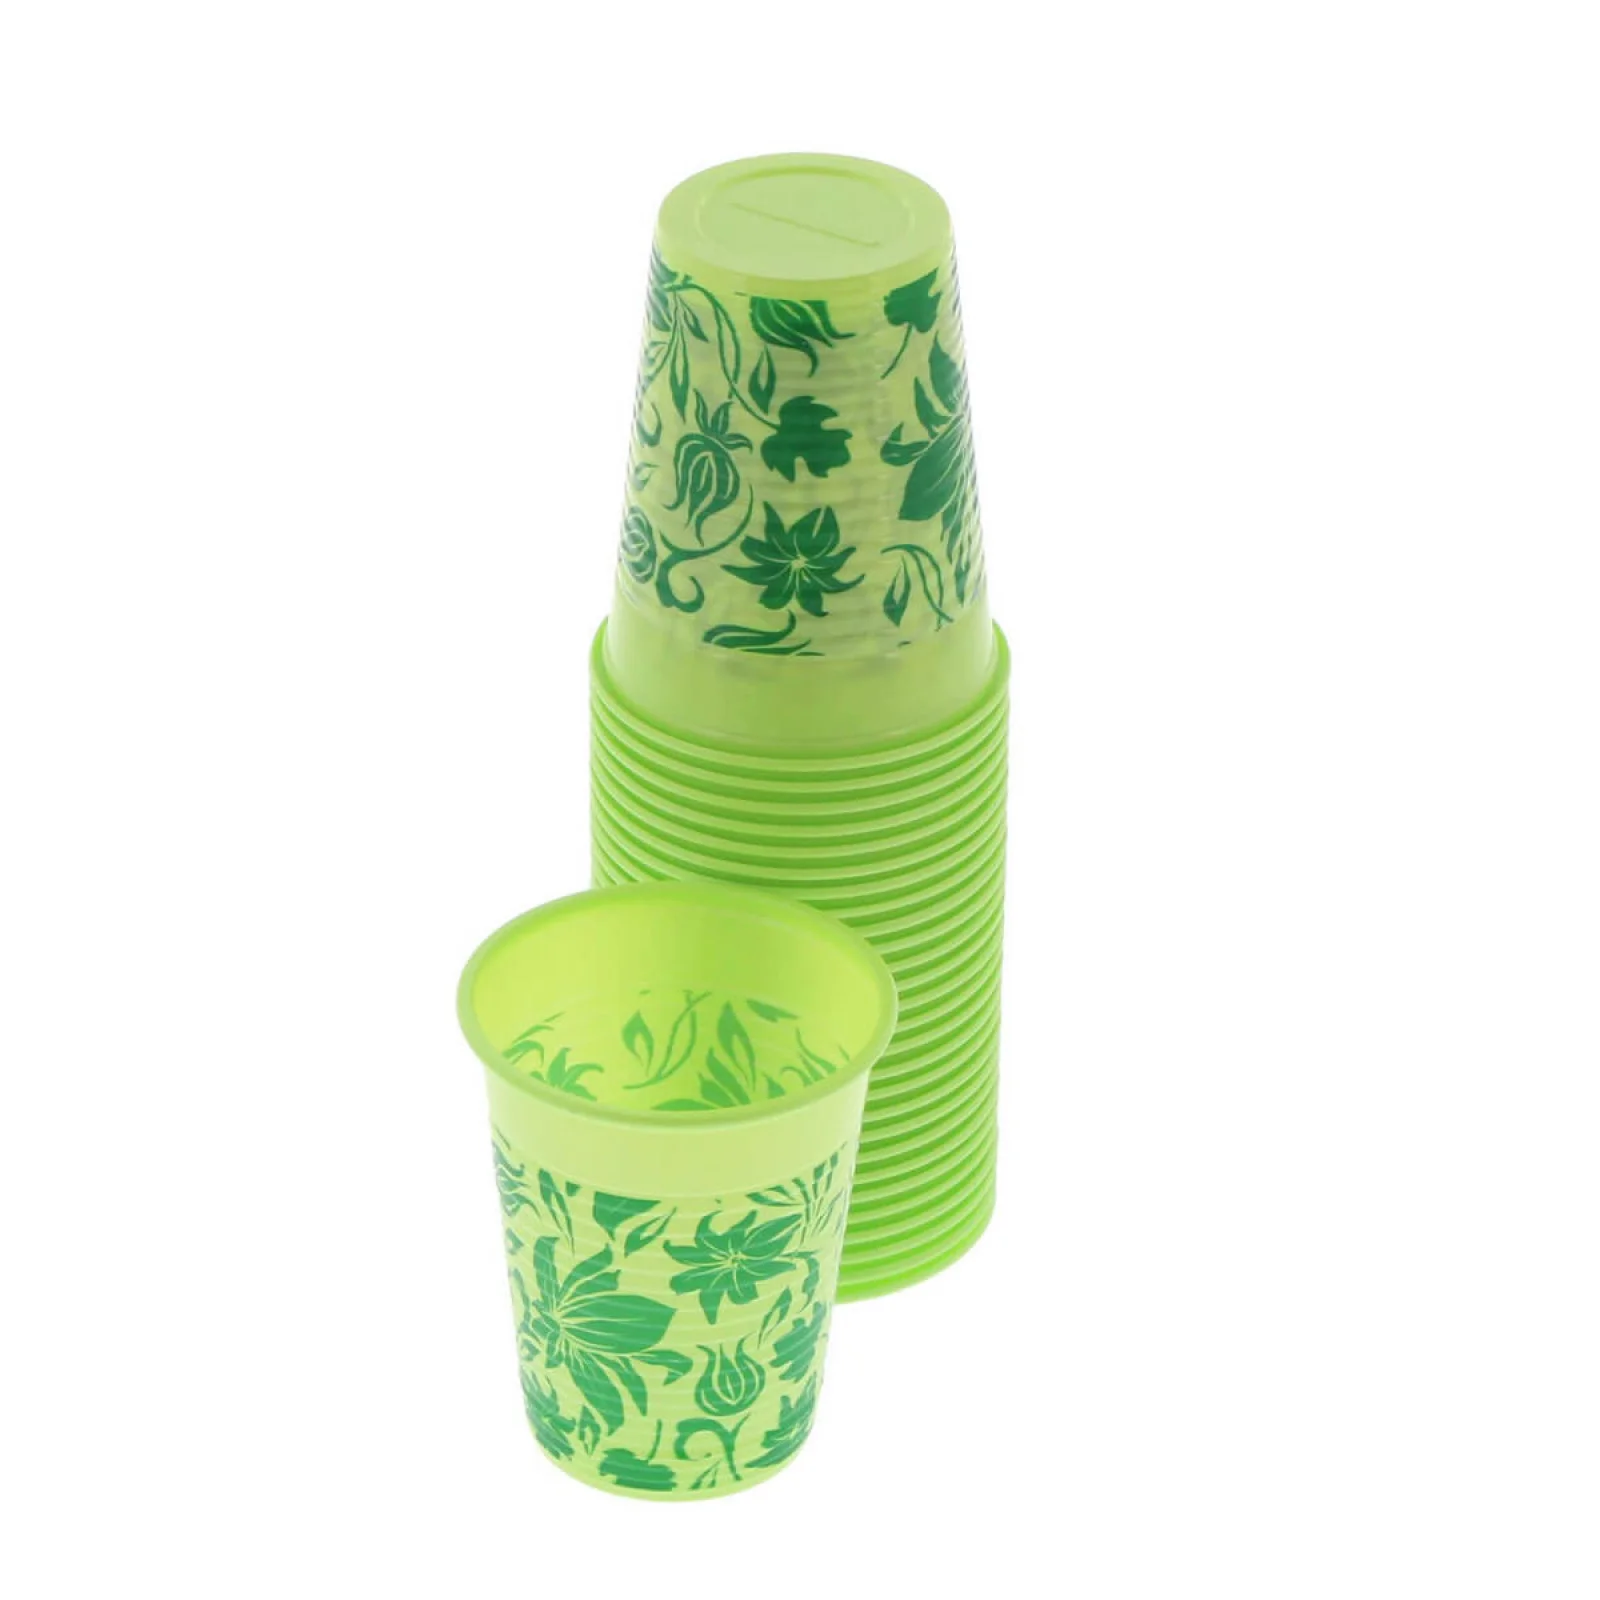 Disposable cups  Euronda Monoart